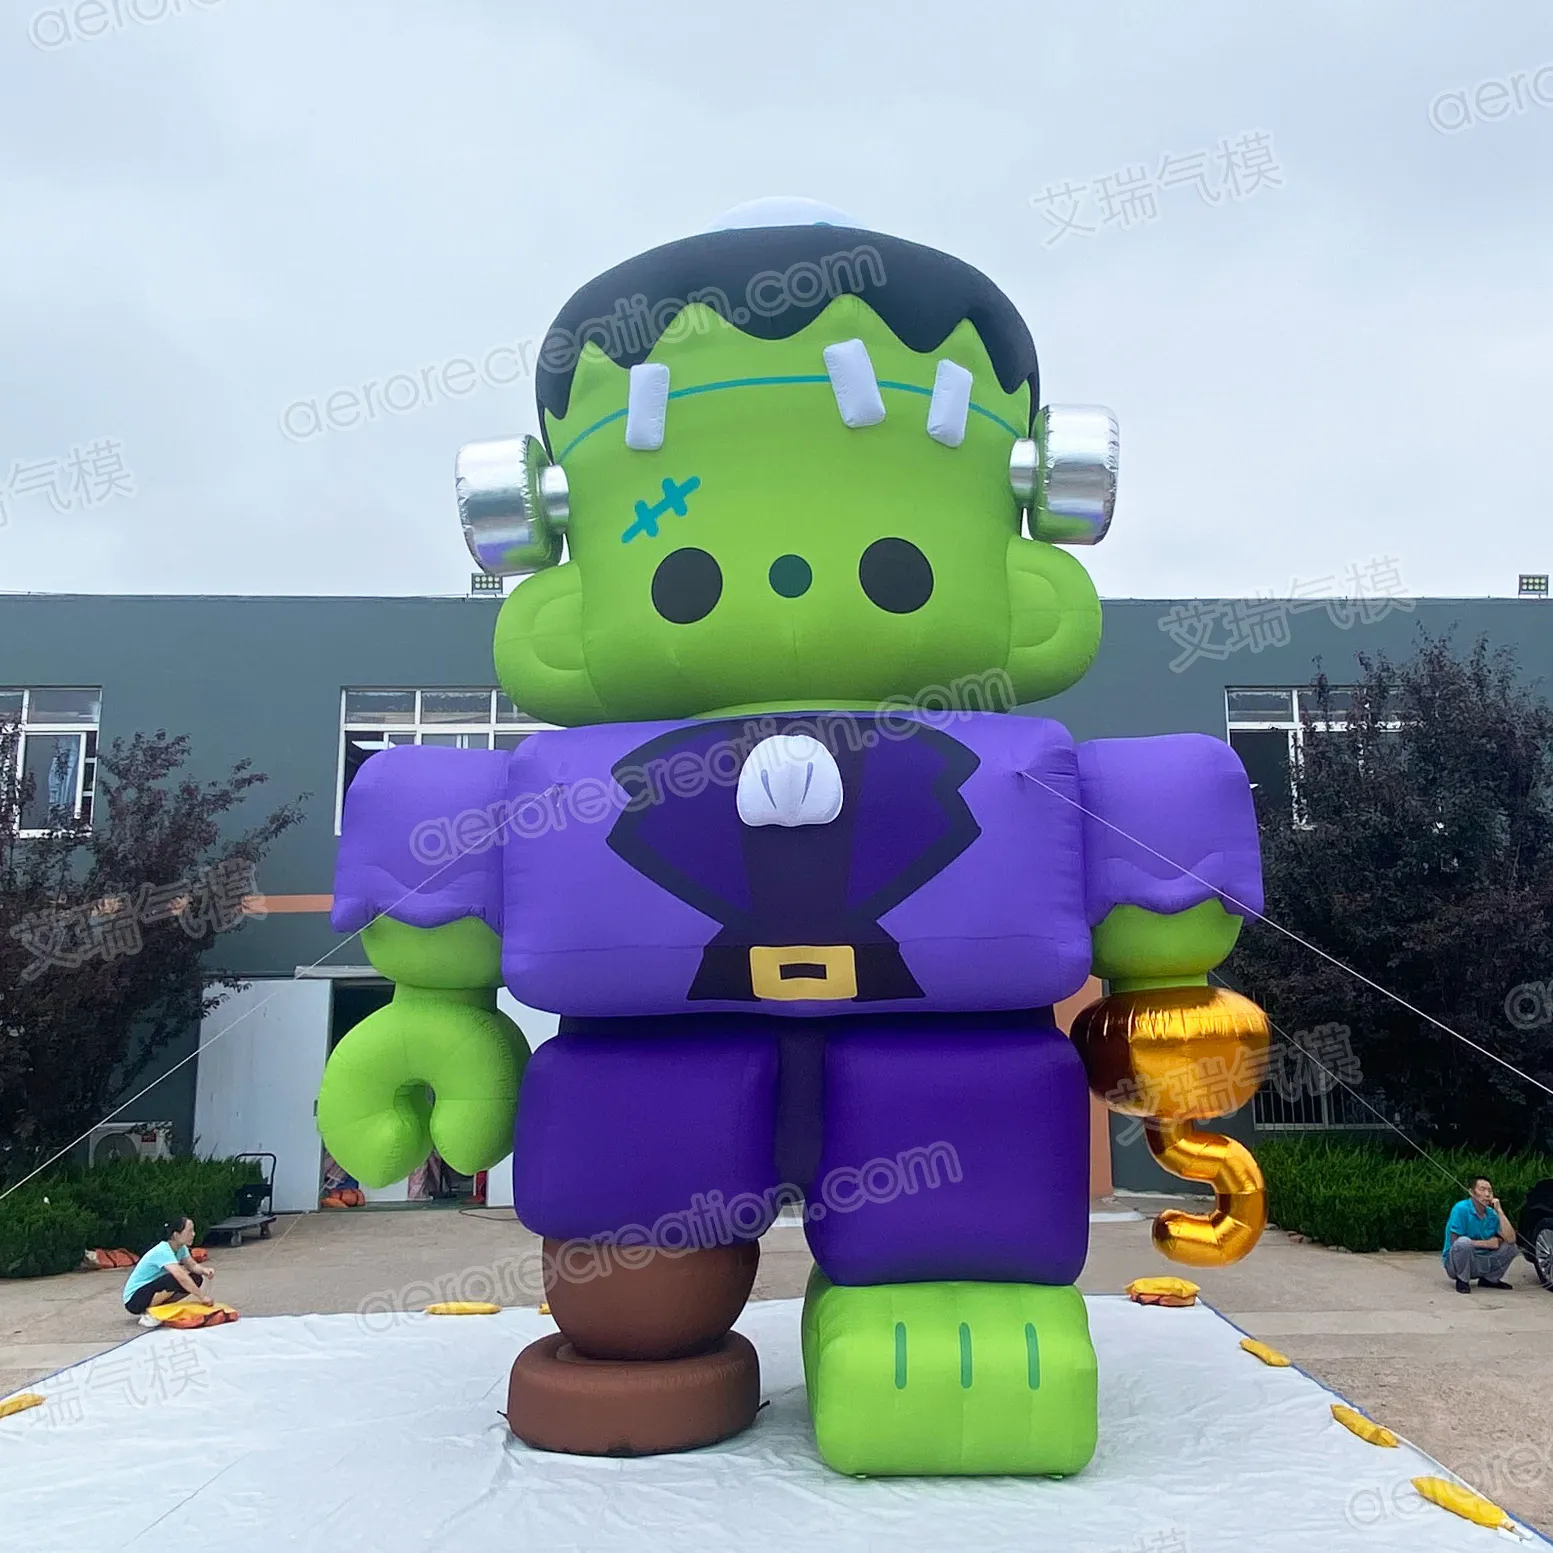 Aero 8m alta publicidade gigante personalizado inflável Hulk personagens desenhos animados infláveis